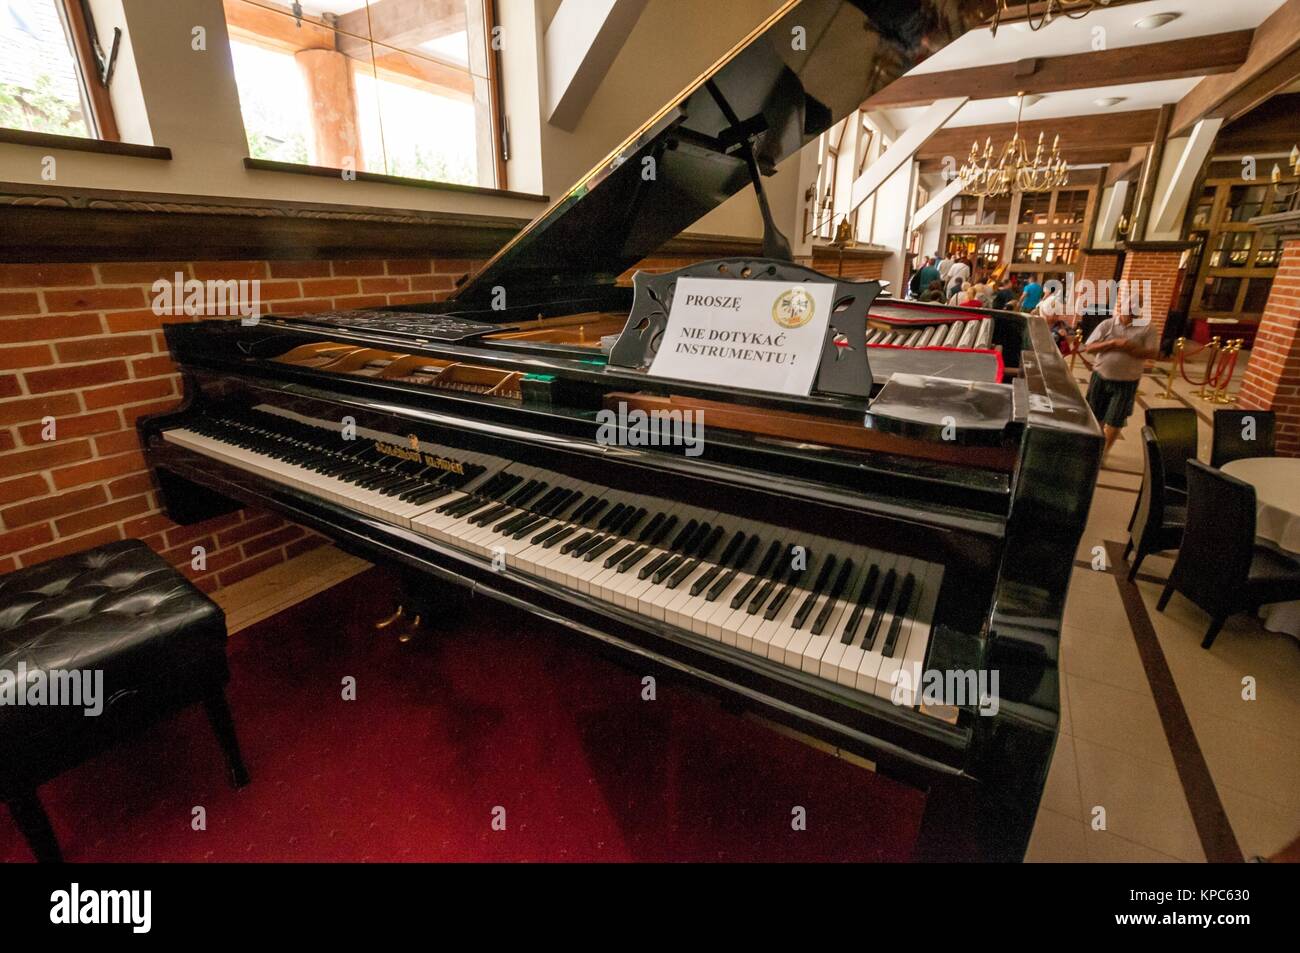 Der größte Klavier in der Welt. Zentrum für Ausbildung und regionale  Förderung. Szymbark, Dorf in der Woiwodschaft Westpommern, Polen  Stockfotografie - Alamy